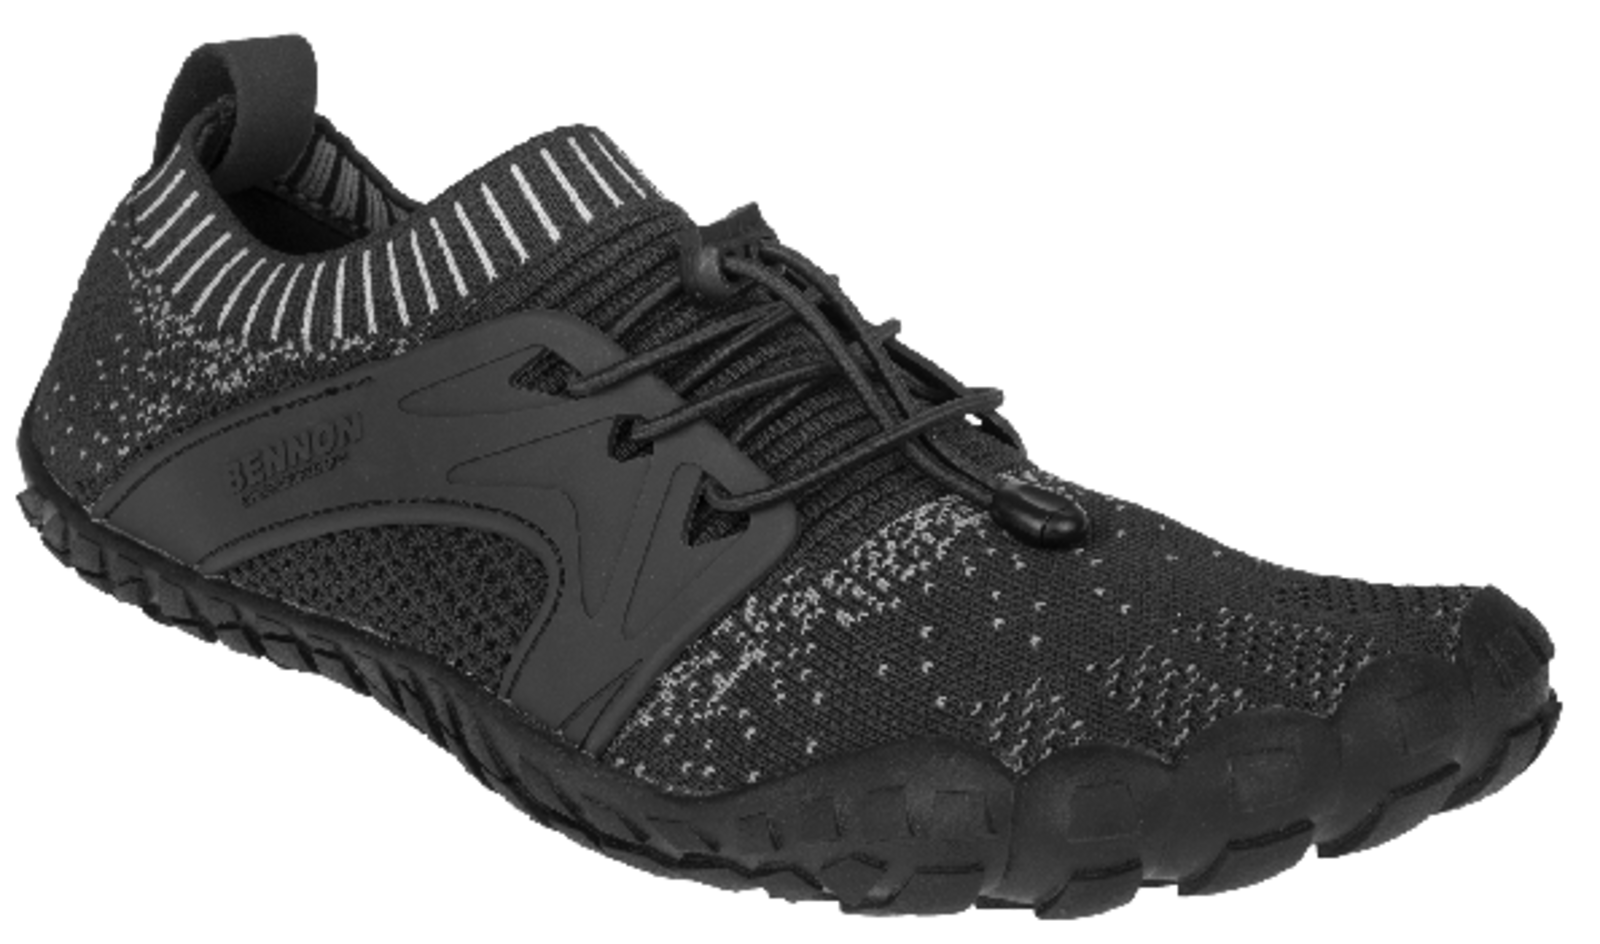 Voľnočasová barefoot obuv Bennon Bosky - veľkosť: 45, farba: čierna/biela